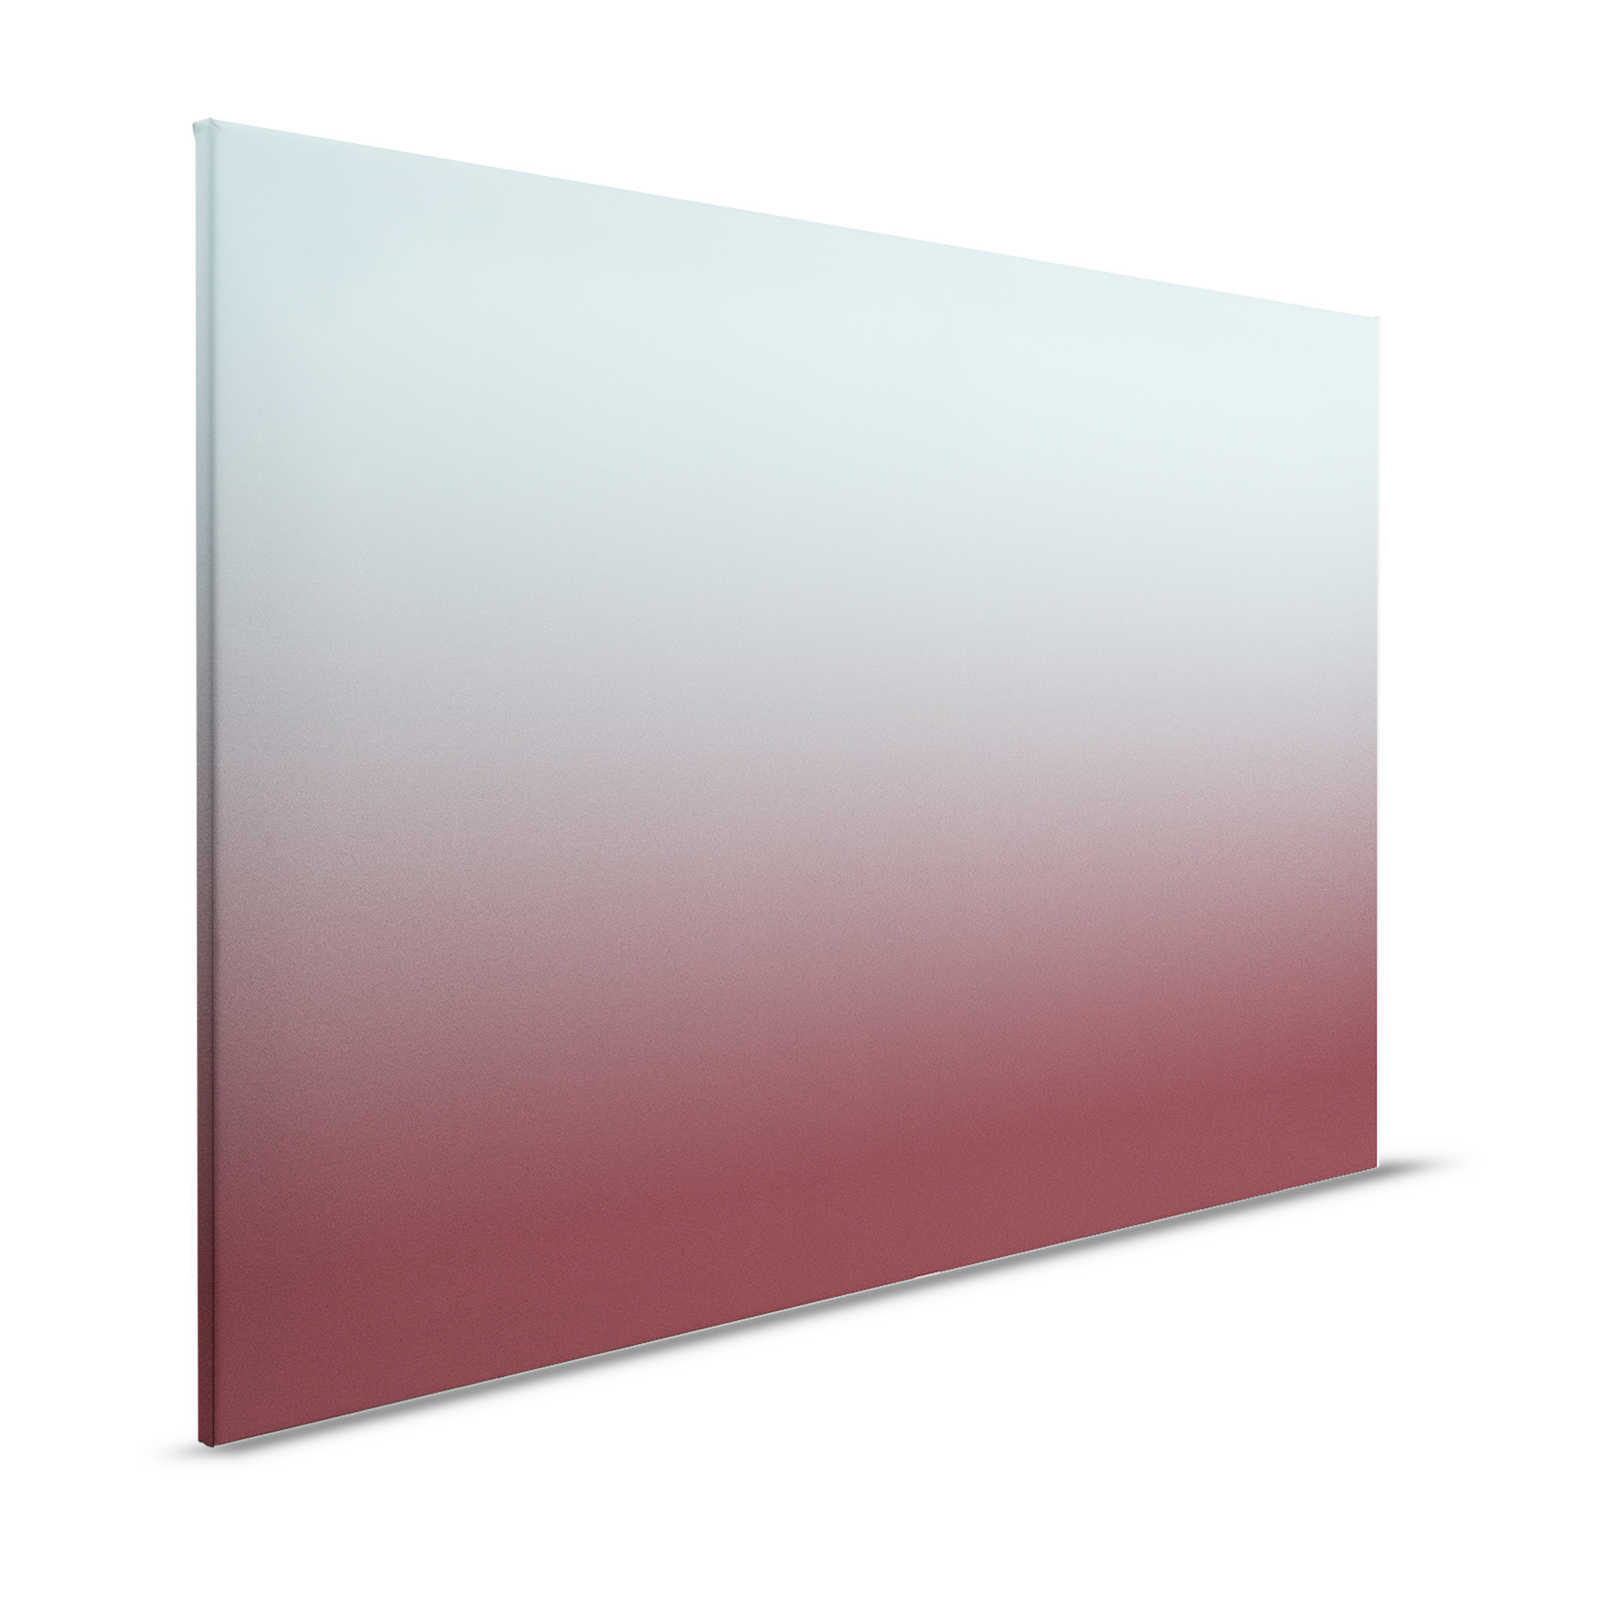 Colour Studio 3 - Pittura su tela Ombre Blu chiaro e rosso vino con sfumature - 1,20 m x 0,80 m
